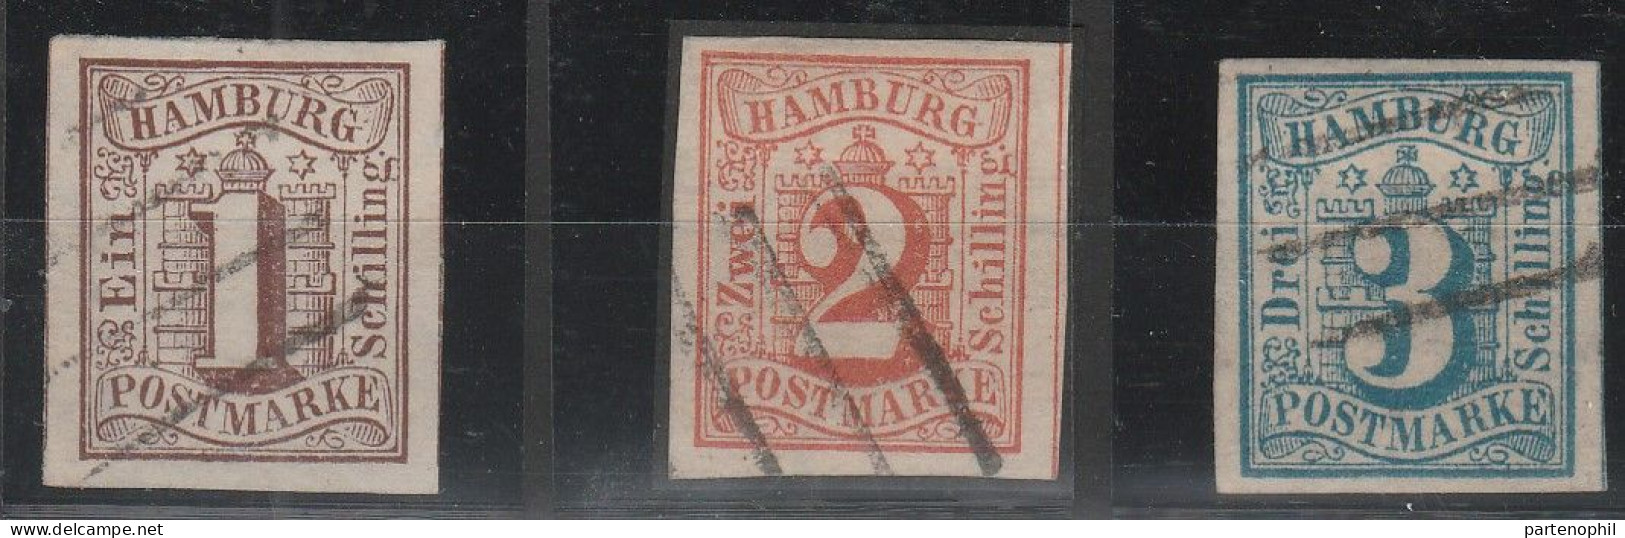 478 Hamburg (Amburgo) 1859 - Stemma, 3 Valori N. 2/4. Cat. € 410,00. SPL - Hambourg